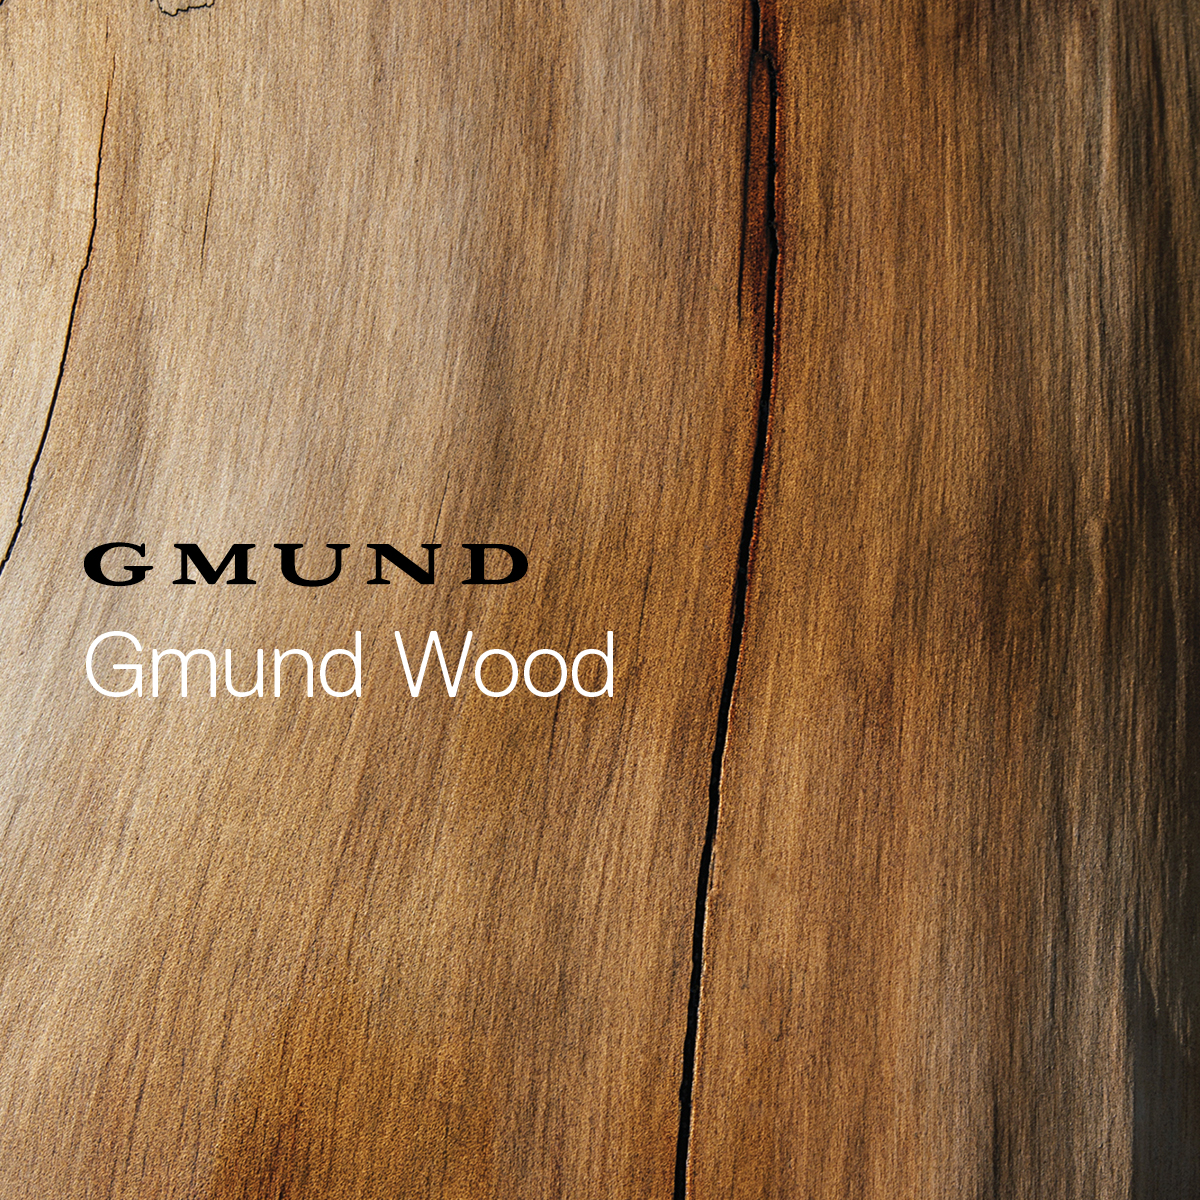 Gmund Wood - Compendium Gmund Wood